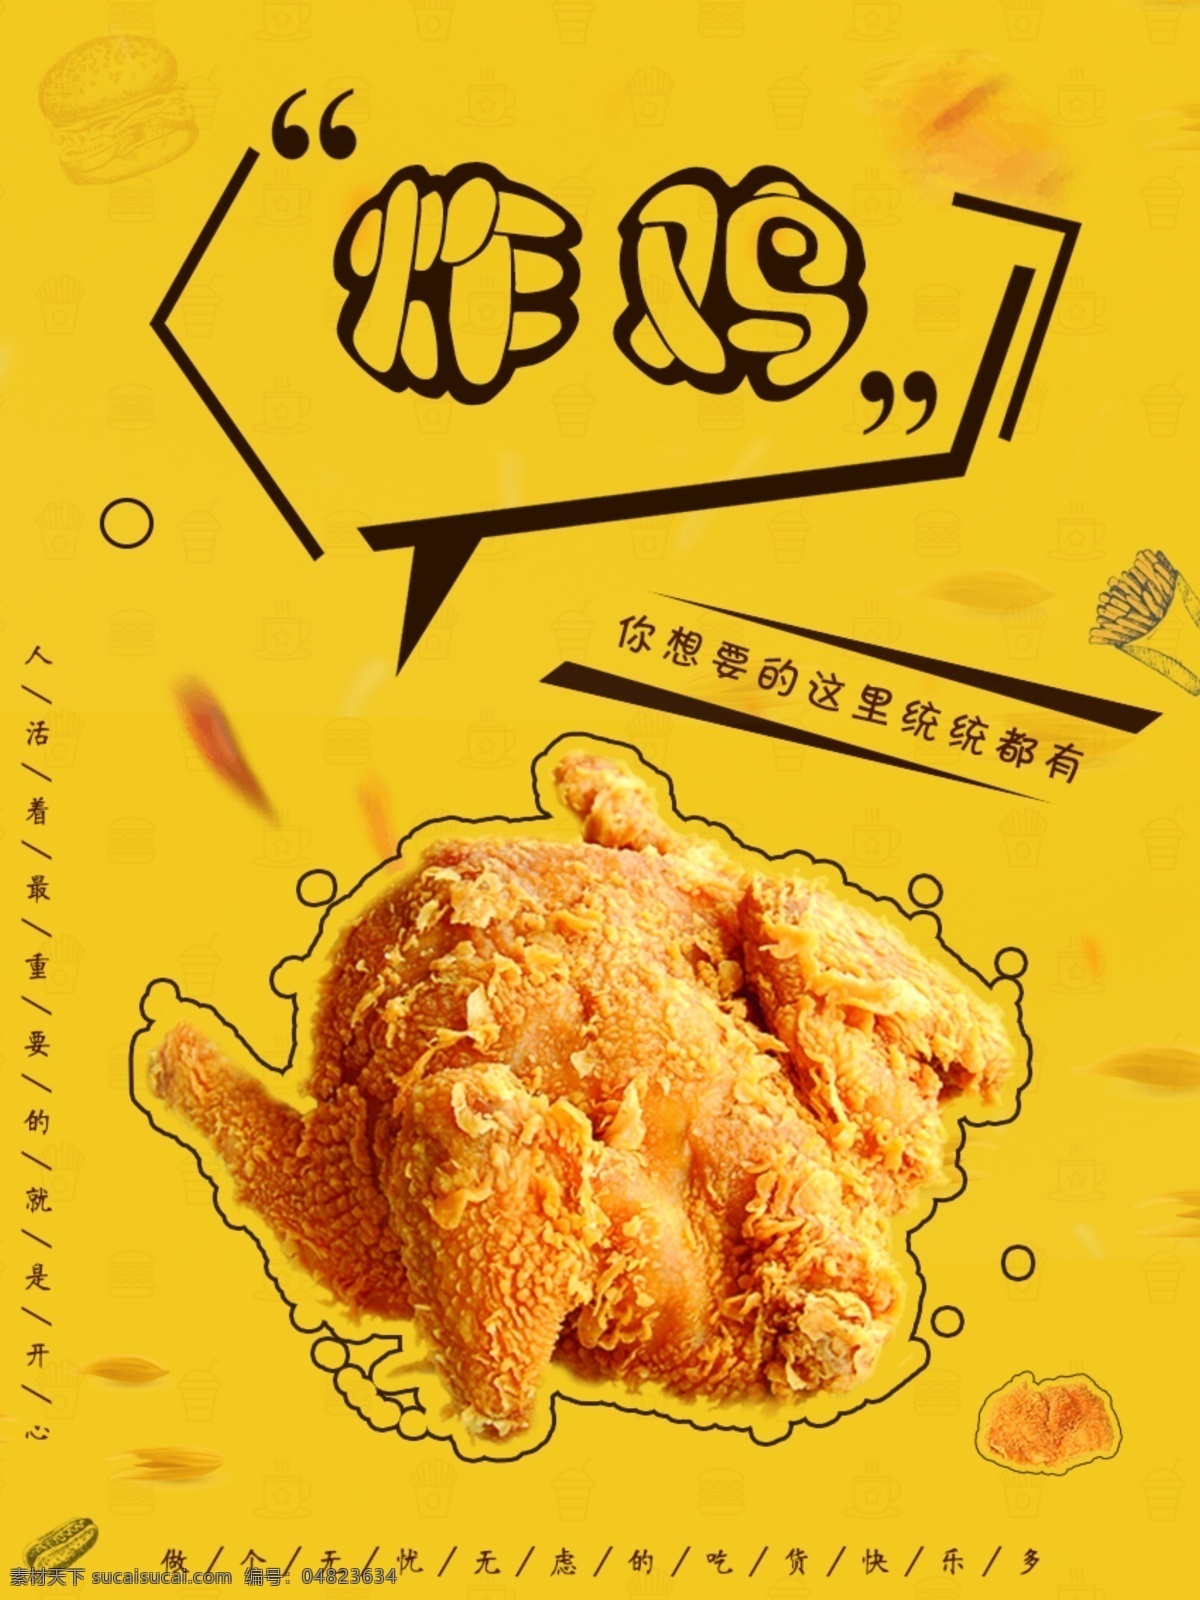 炸鸡 鸡 排 美食 汉堡 餐饮海报 美食海报 黄色 简约 鸡排 小吃 炸鸡海报